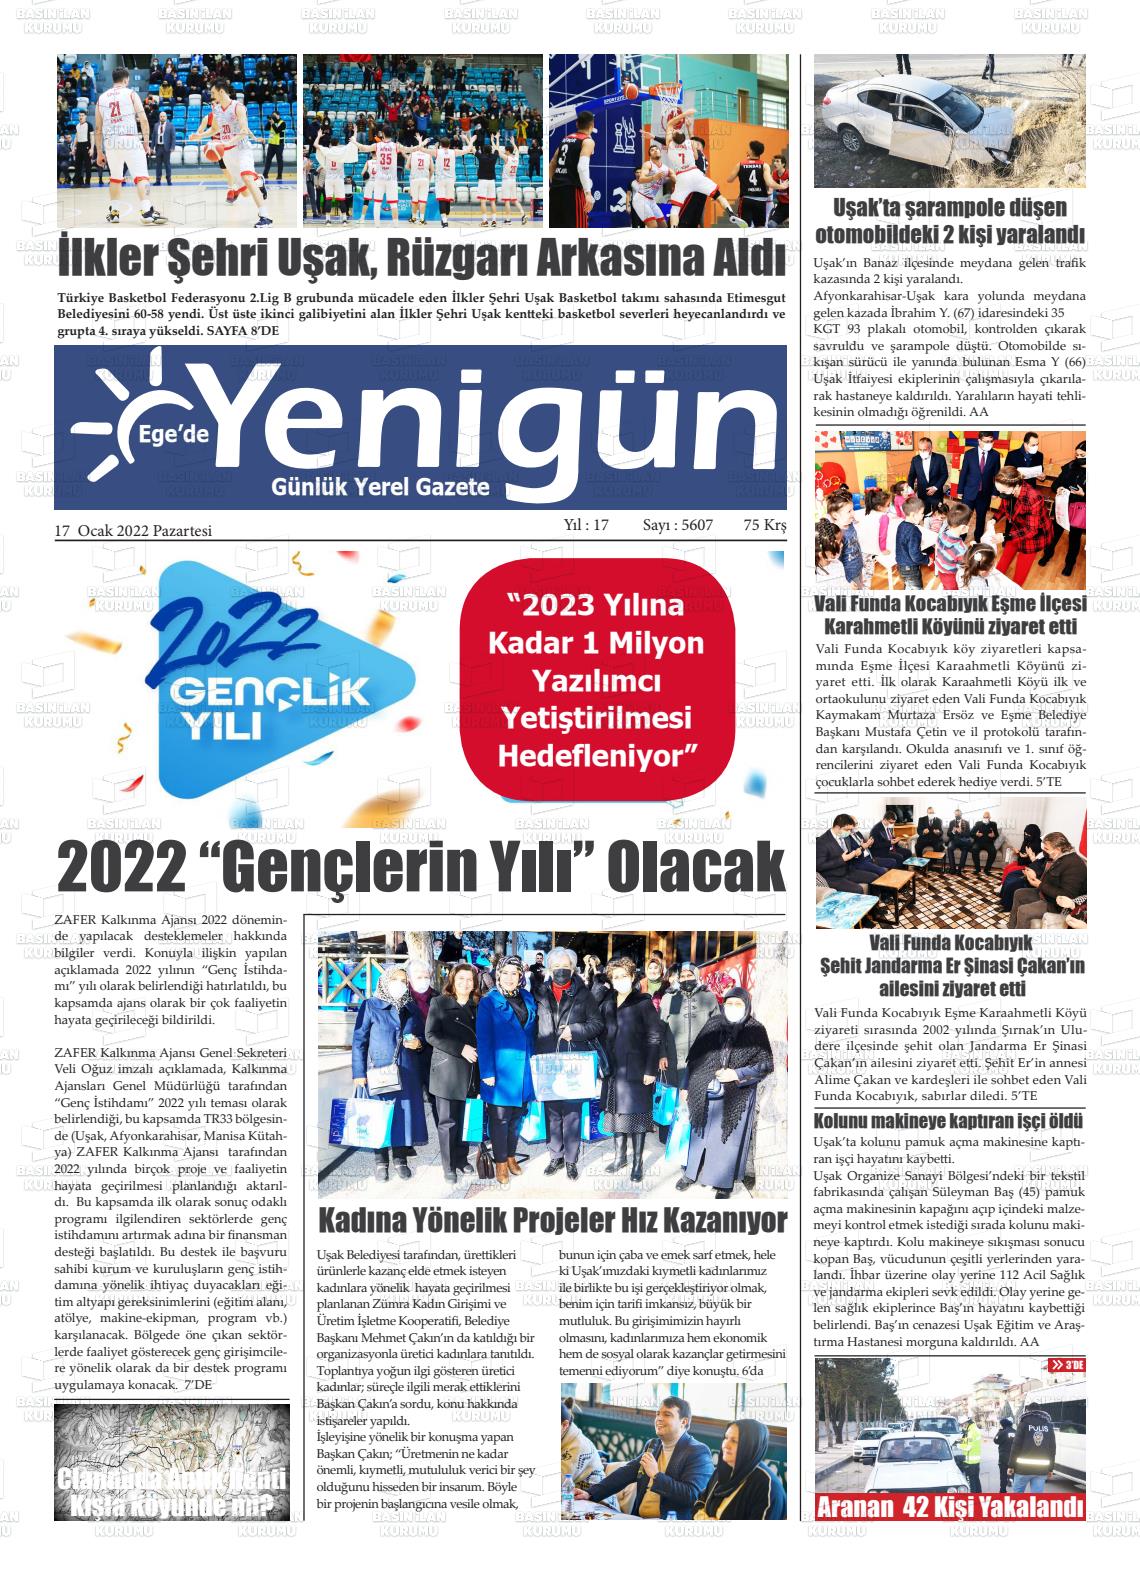 17 Ocak 2022 EGE'DE YENİGÜN GAZETESİ Gazete Manşeti